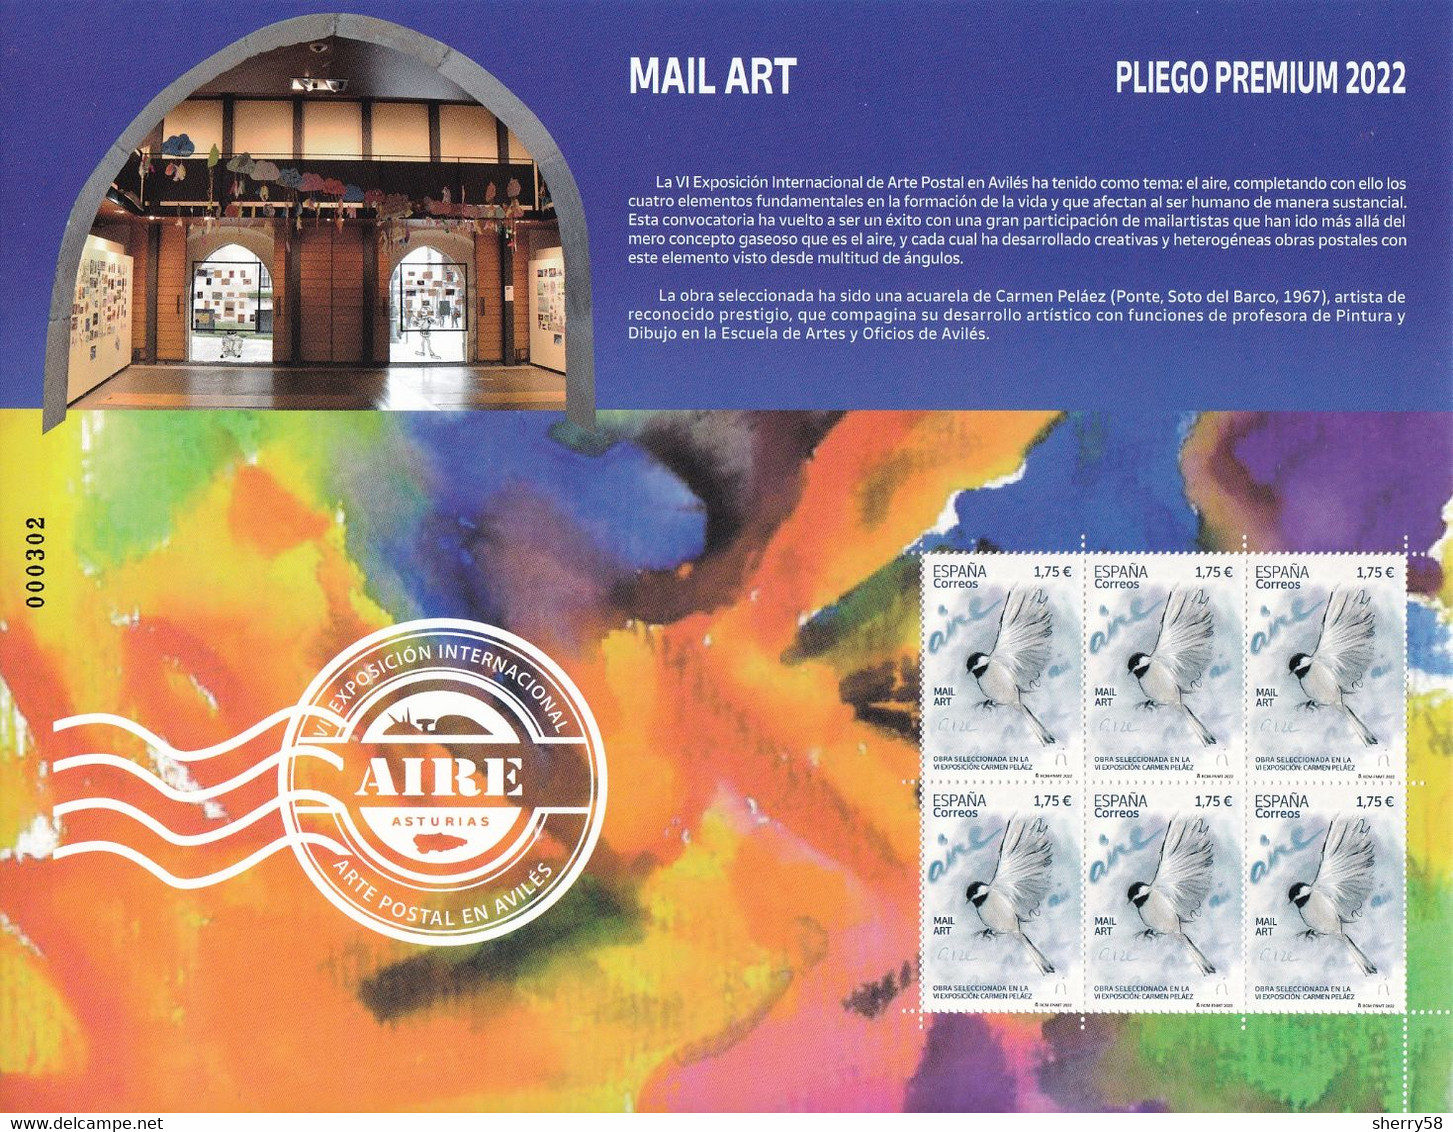 2022-ED. 5568 EN PLIEGO PREMIUM -Mail Art. Aire. Obra Seleccionada En La VI Exposición Carmen Peláez.- NUEVO - Blocs & Hojas